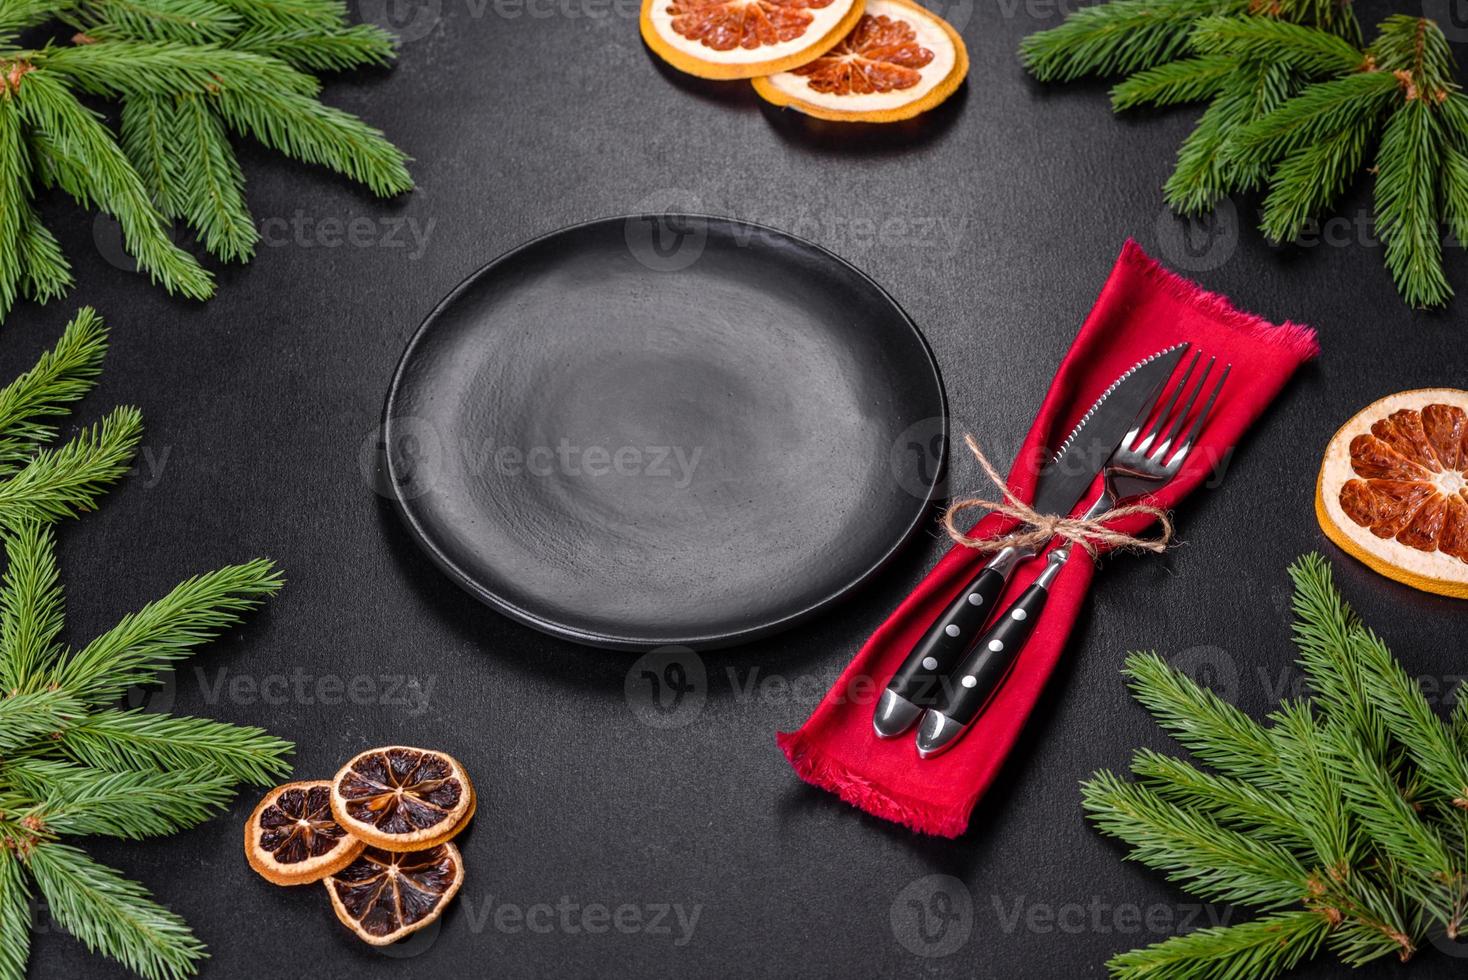 mesa festiva de natal com eletrodomésticos, pães de gengibre, galhos de árvores e árvores cítricas secas foto